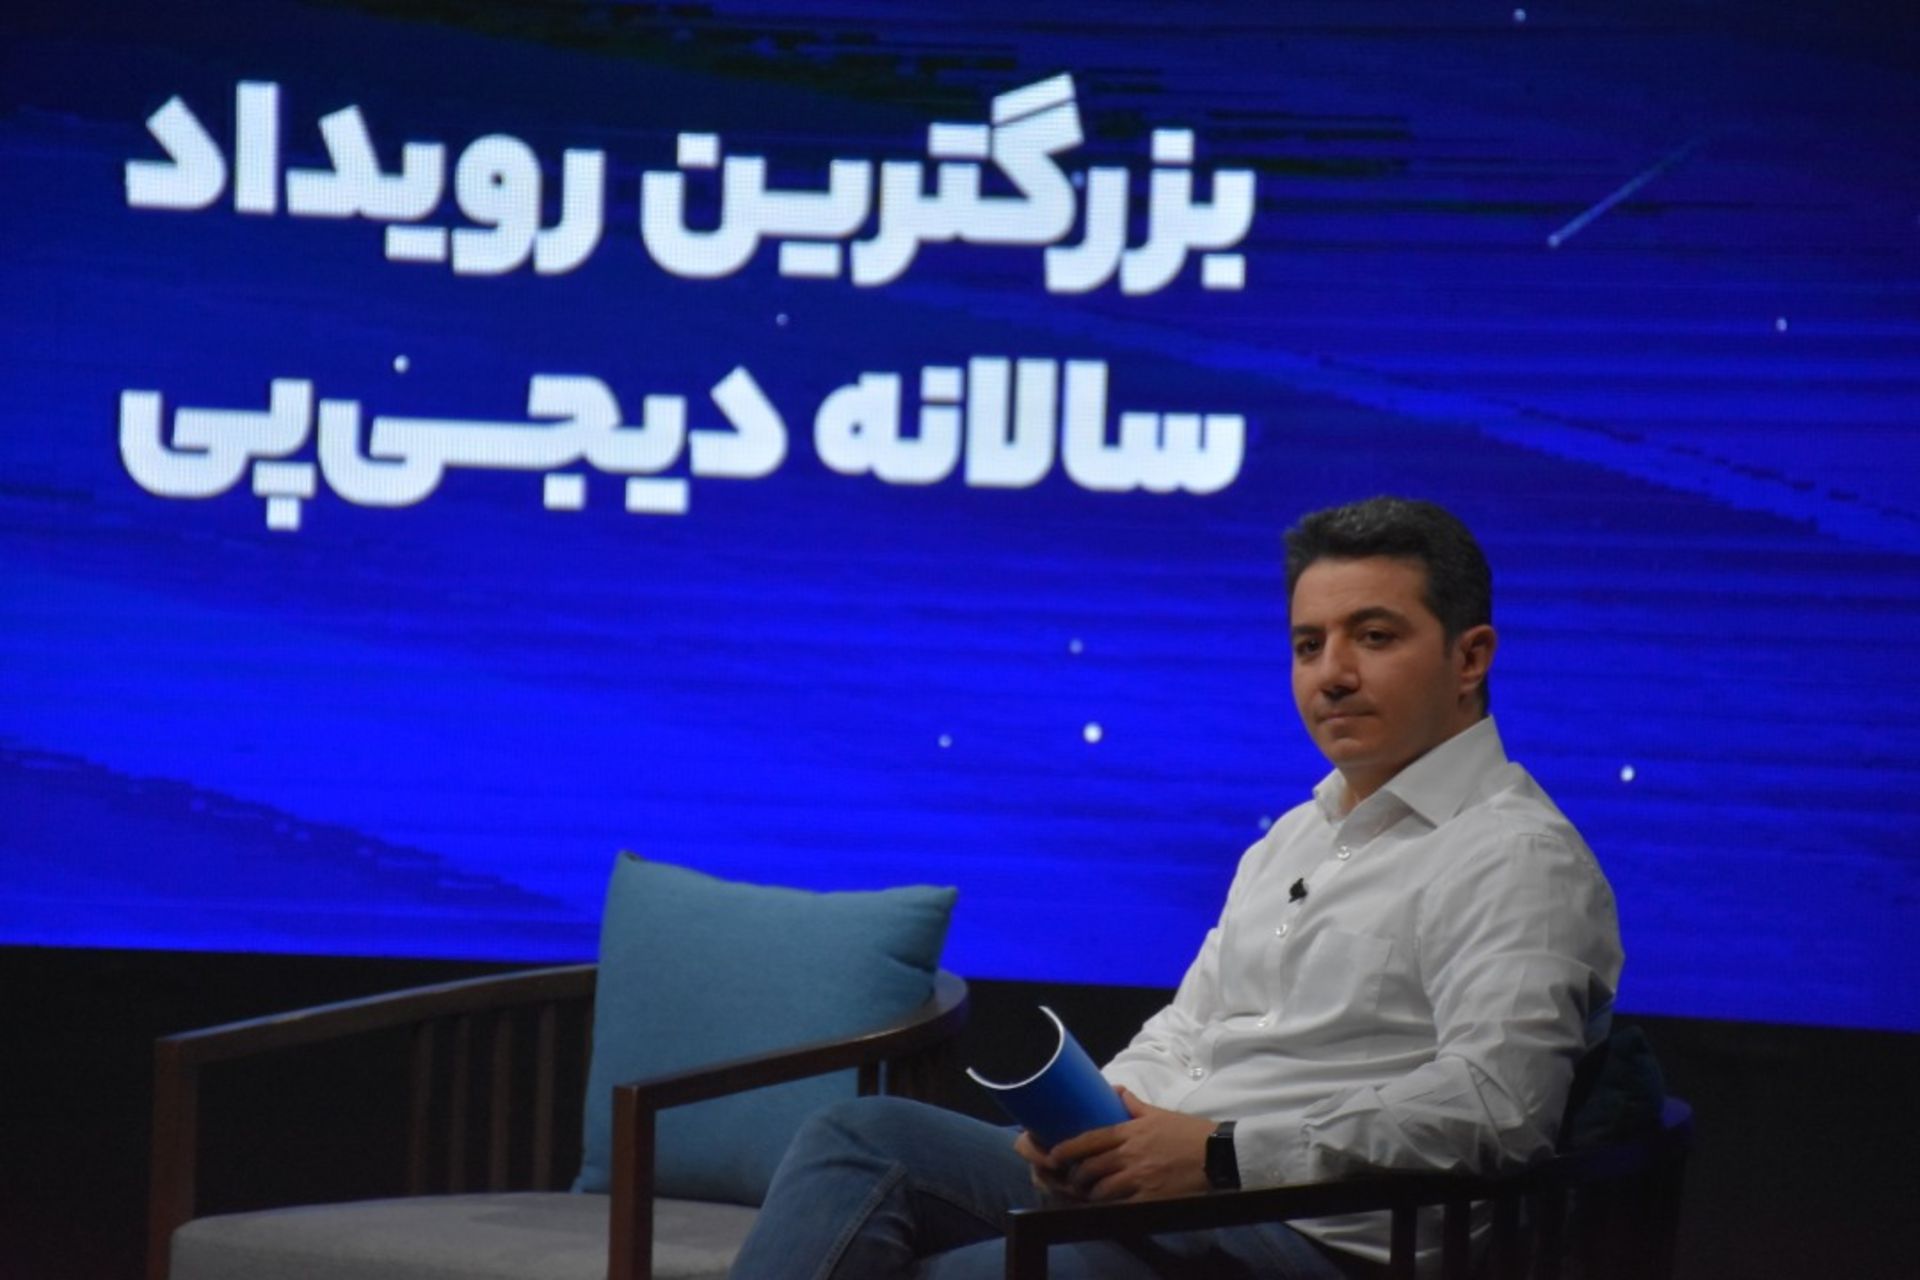 حمید محمدی در مراسم گزارش سالانه دیجی پی